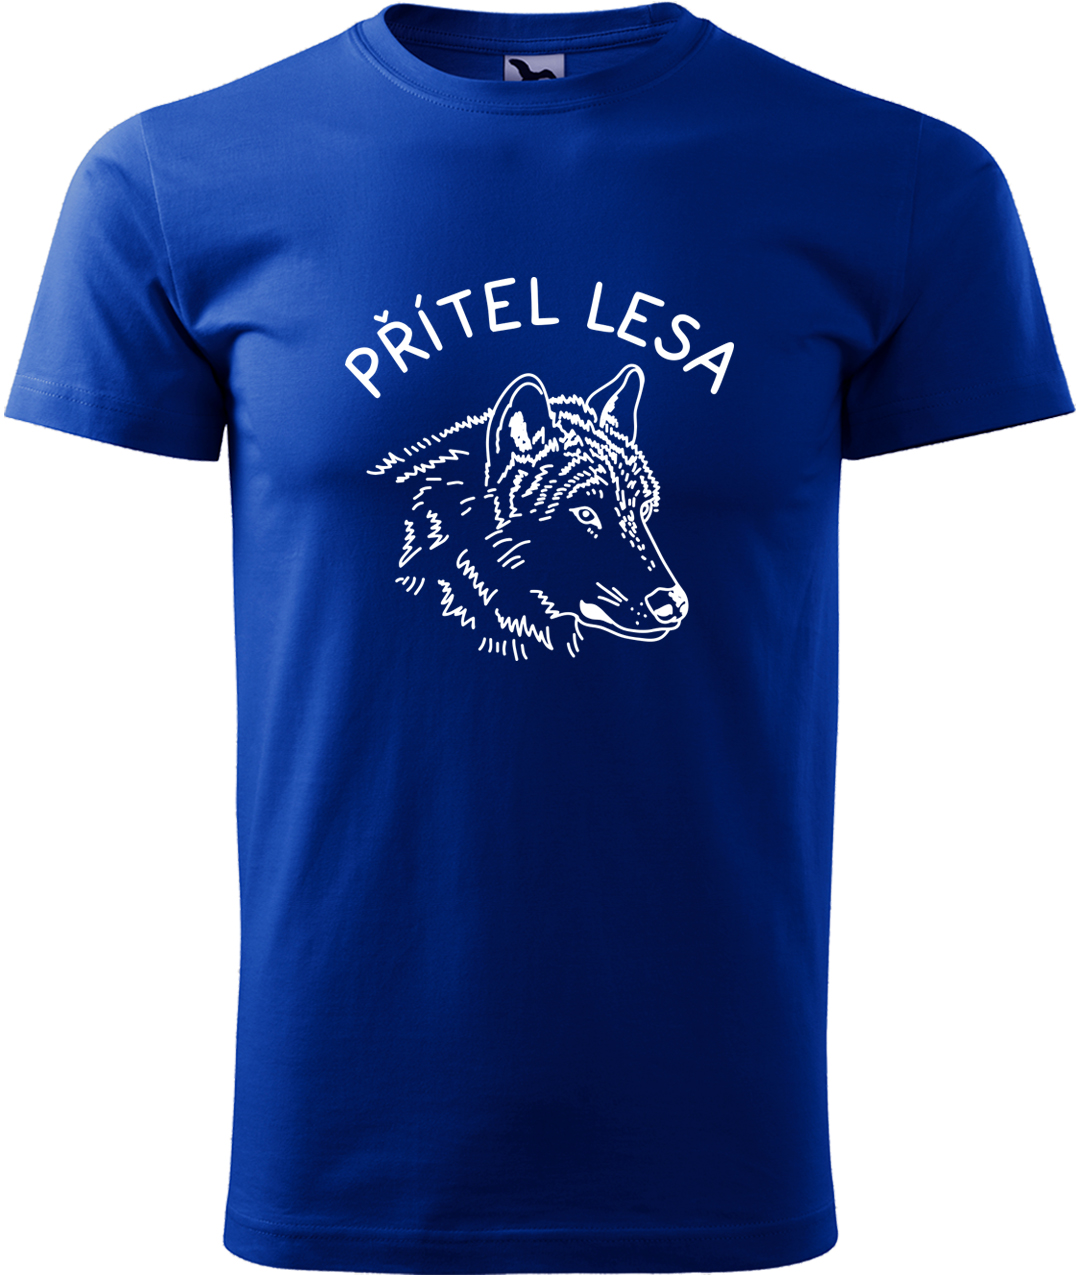 Pánské tričko s vlkem - Přítel lesa Velikost: 3XL, Barva: Královská modrá (05), Střih: pánský